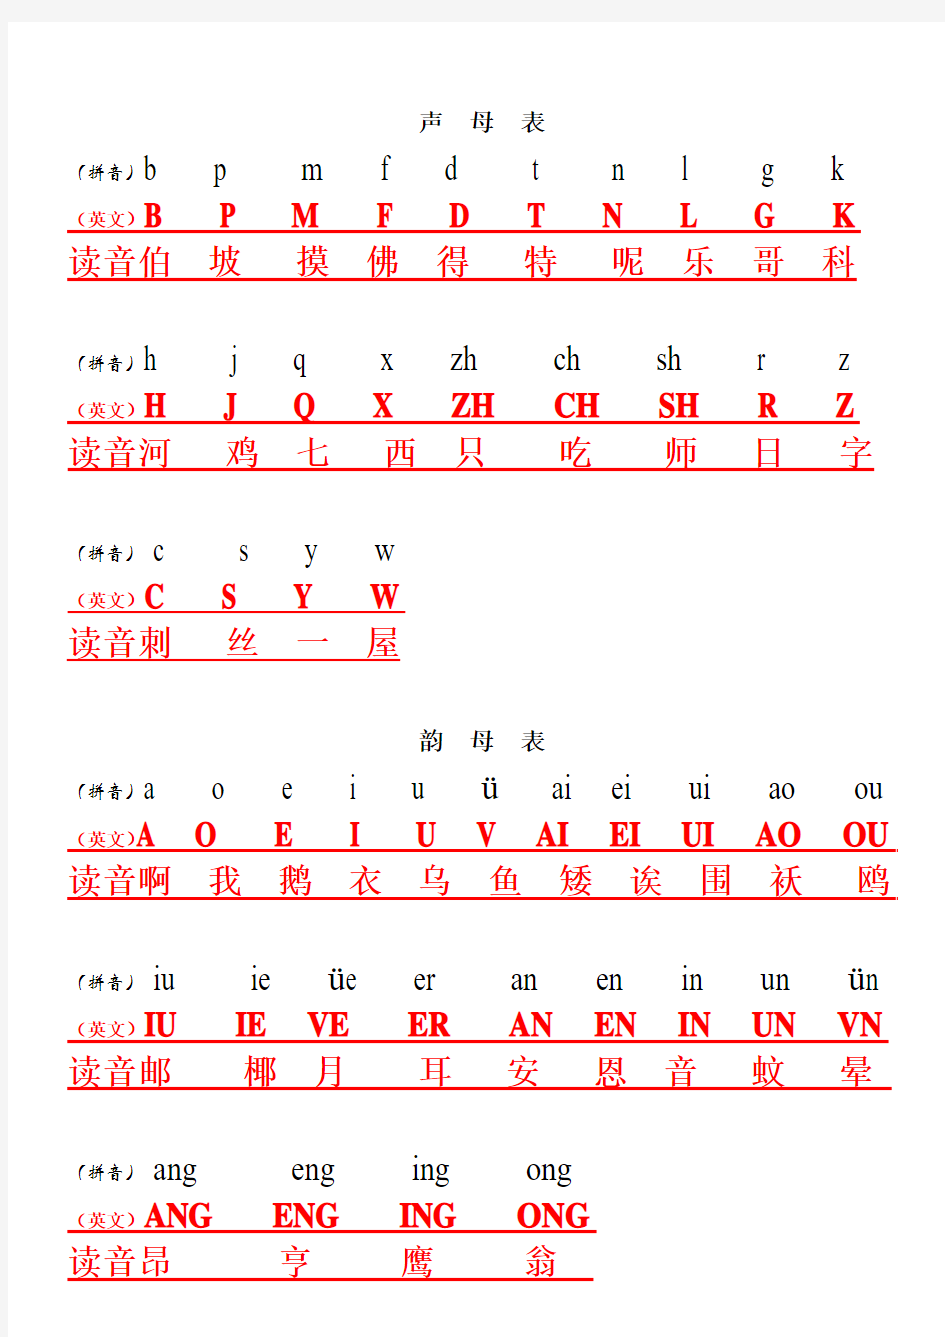 汉语拼音与英文字母键盘对照表